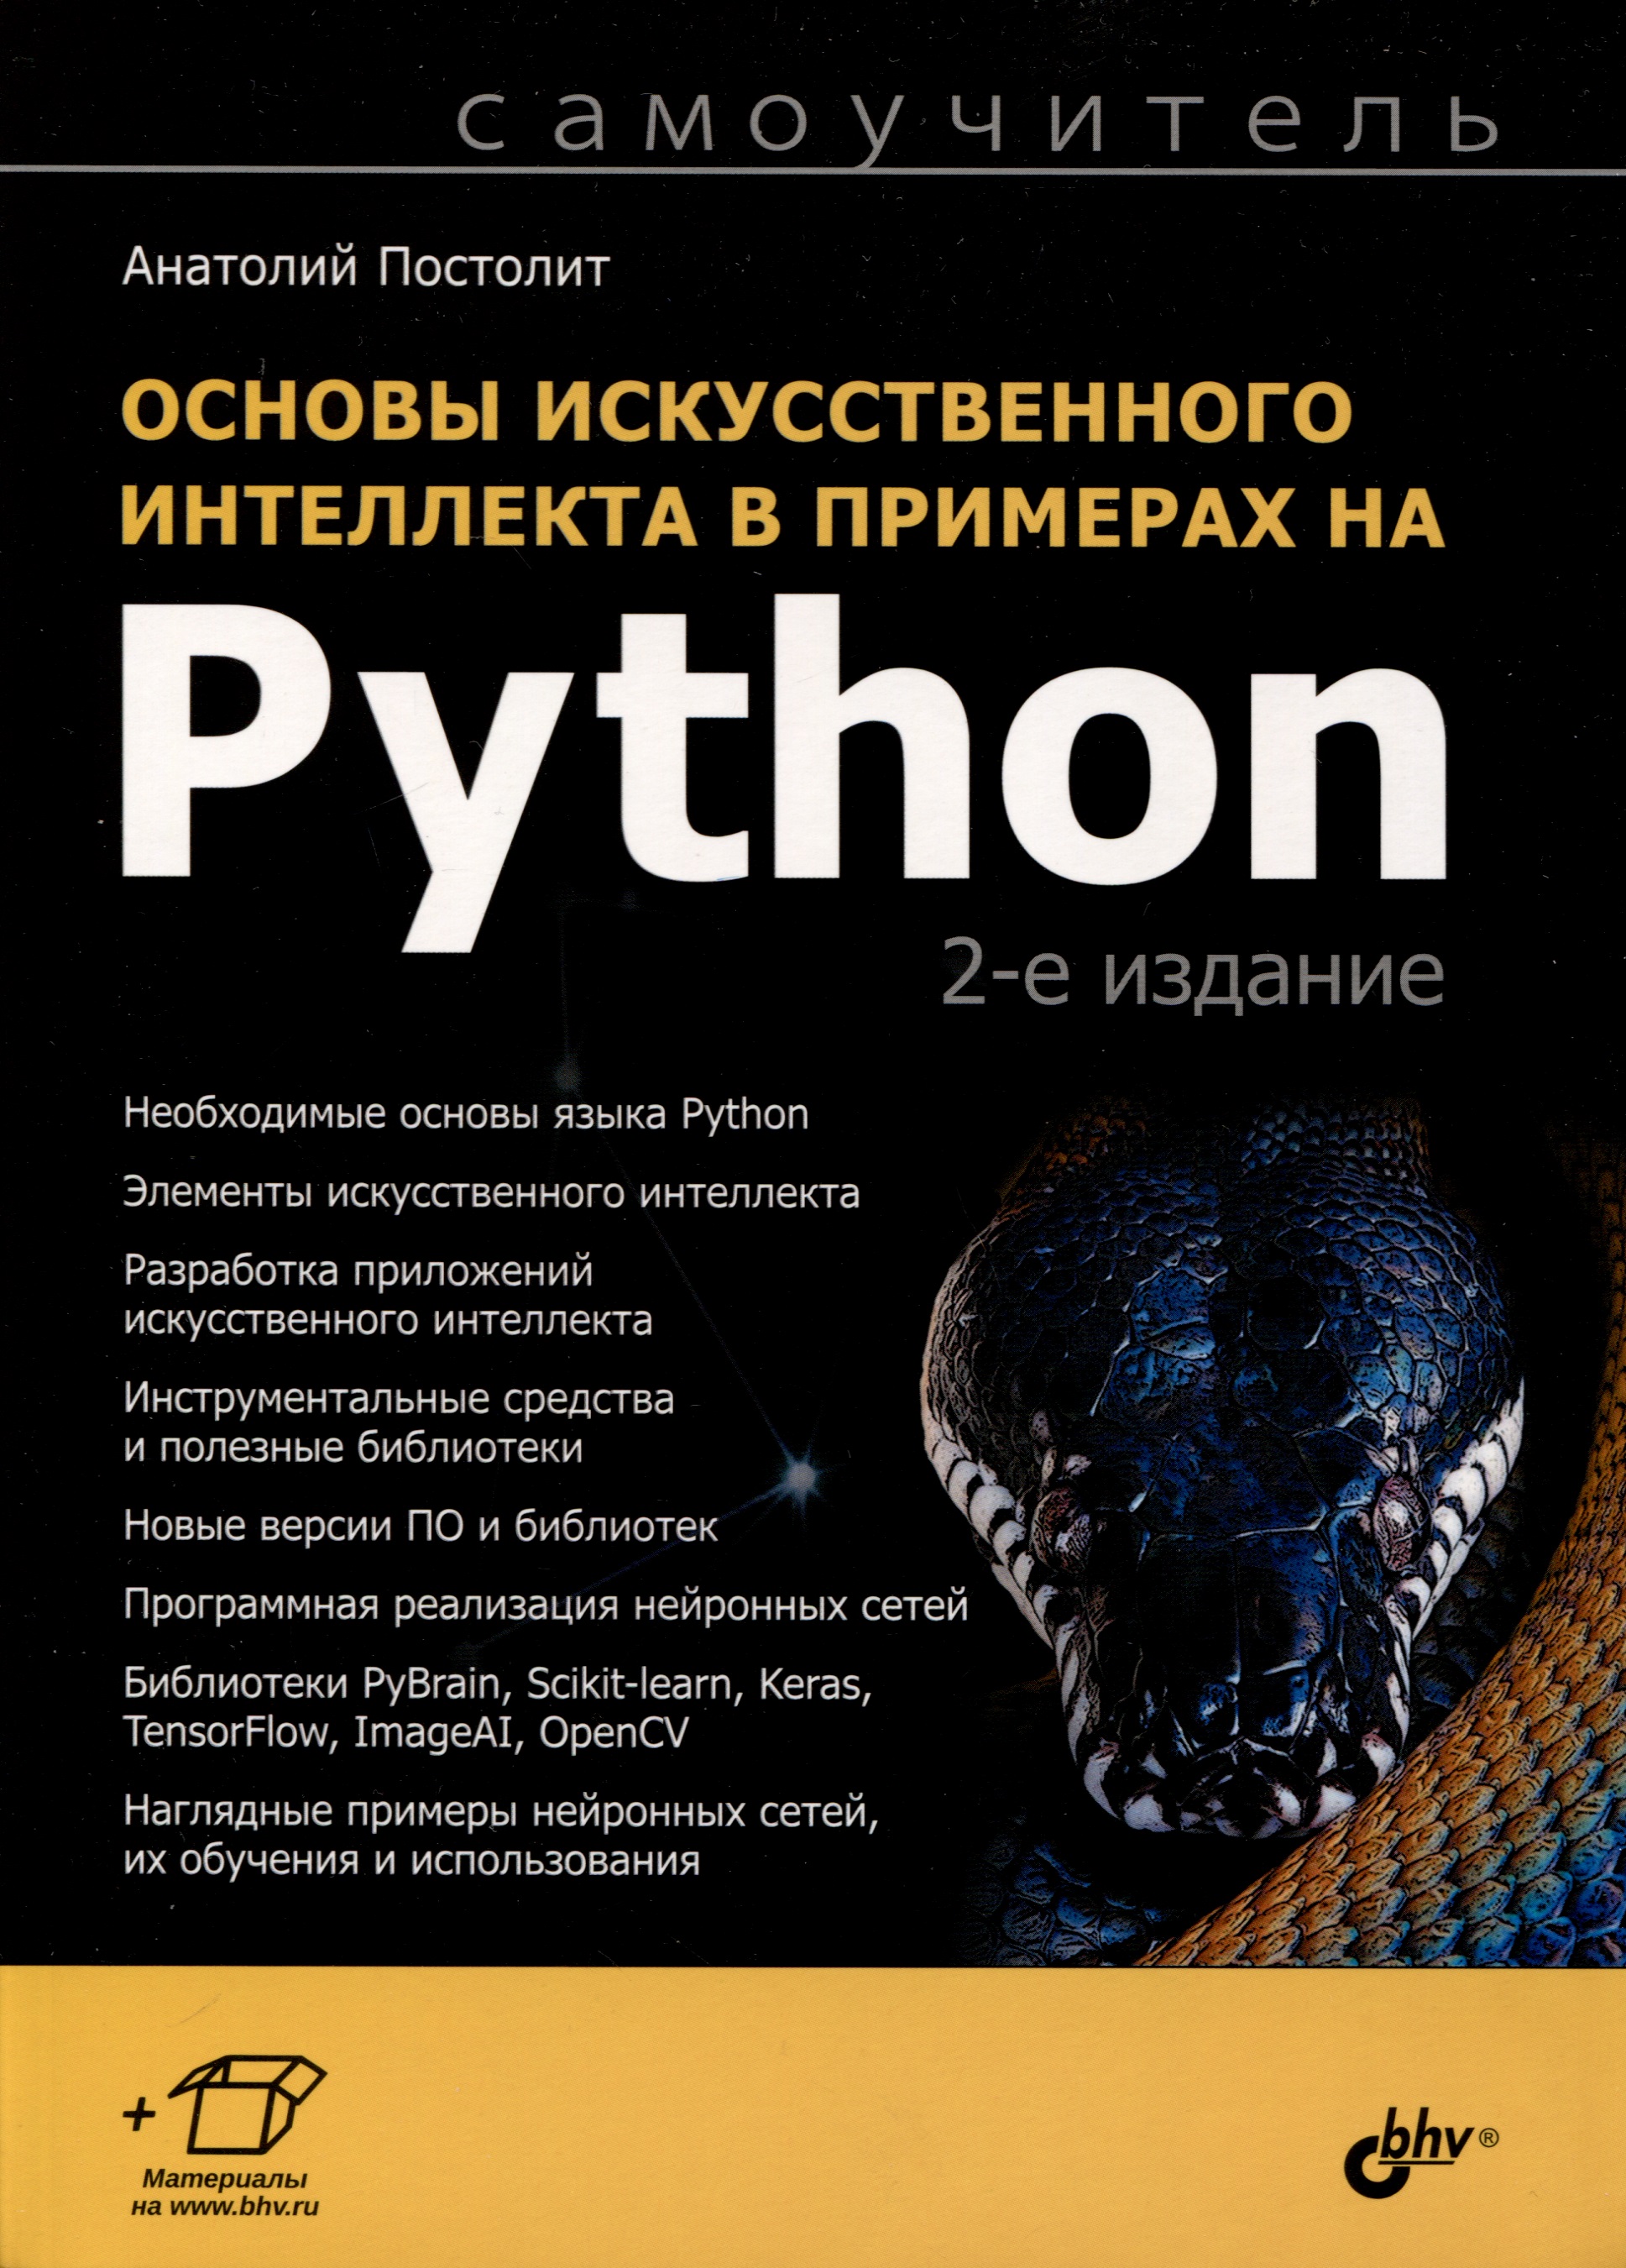 таулли т основы искусственного интеллекта нетехническое введение Основы искусственного интеллекта в примерах на Python. Самоучитель